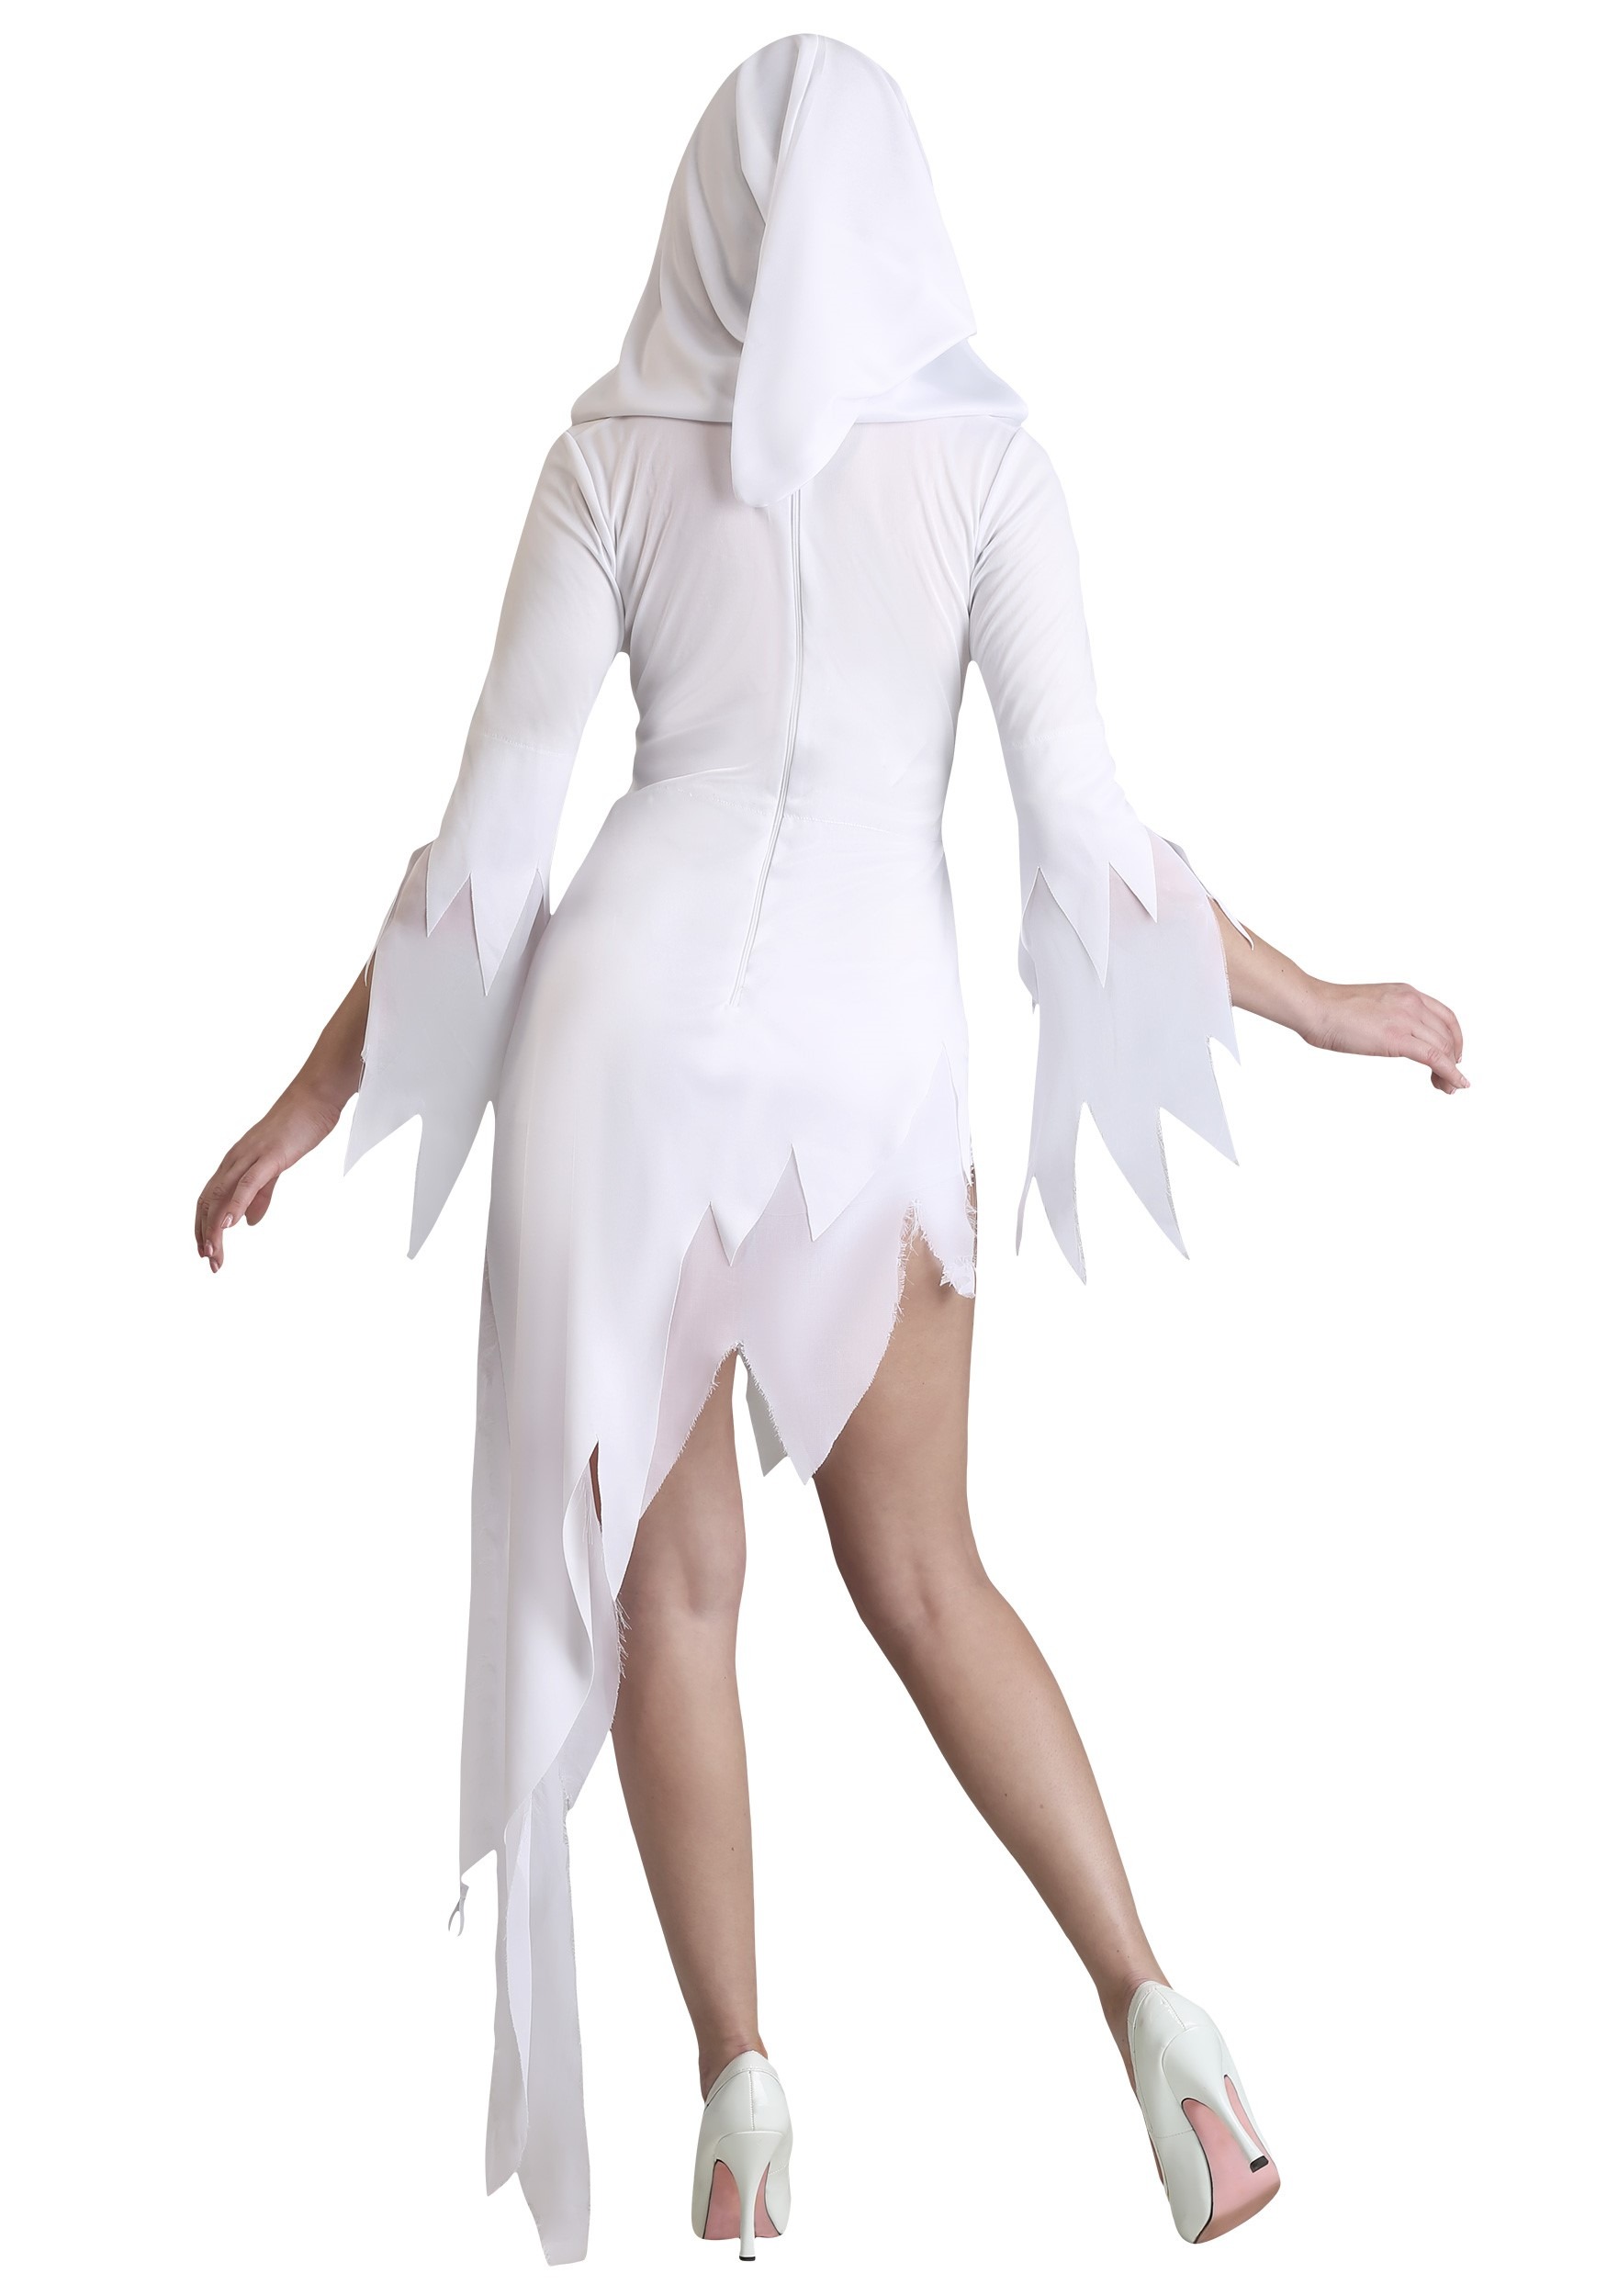 Ghost Babe Women's Fancy Dress Costume